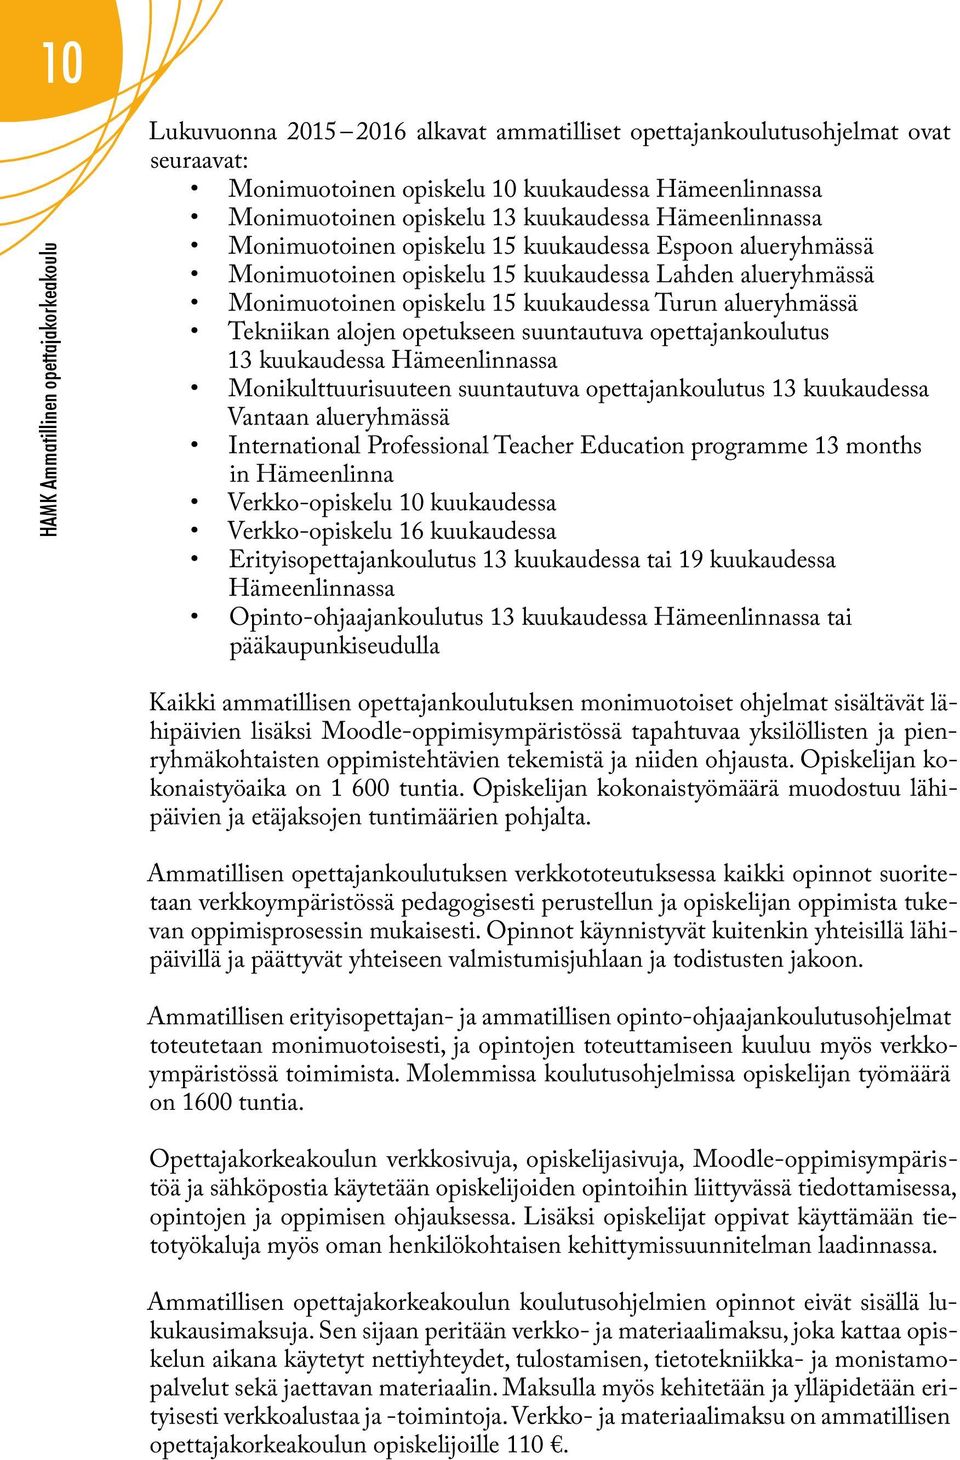 alueryhmässä Tekniikan alojen opetukseen suuntautuva opettajankoulutus 13 kuukaudessa Hämeenlinnassa Monikulttuurisuuteen suuntautuva opettajankoulutus 13 kuukaudessa Vantaan alueryhmässä